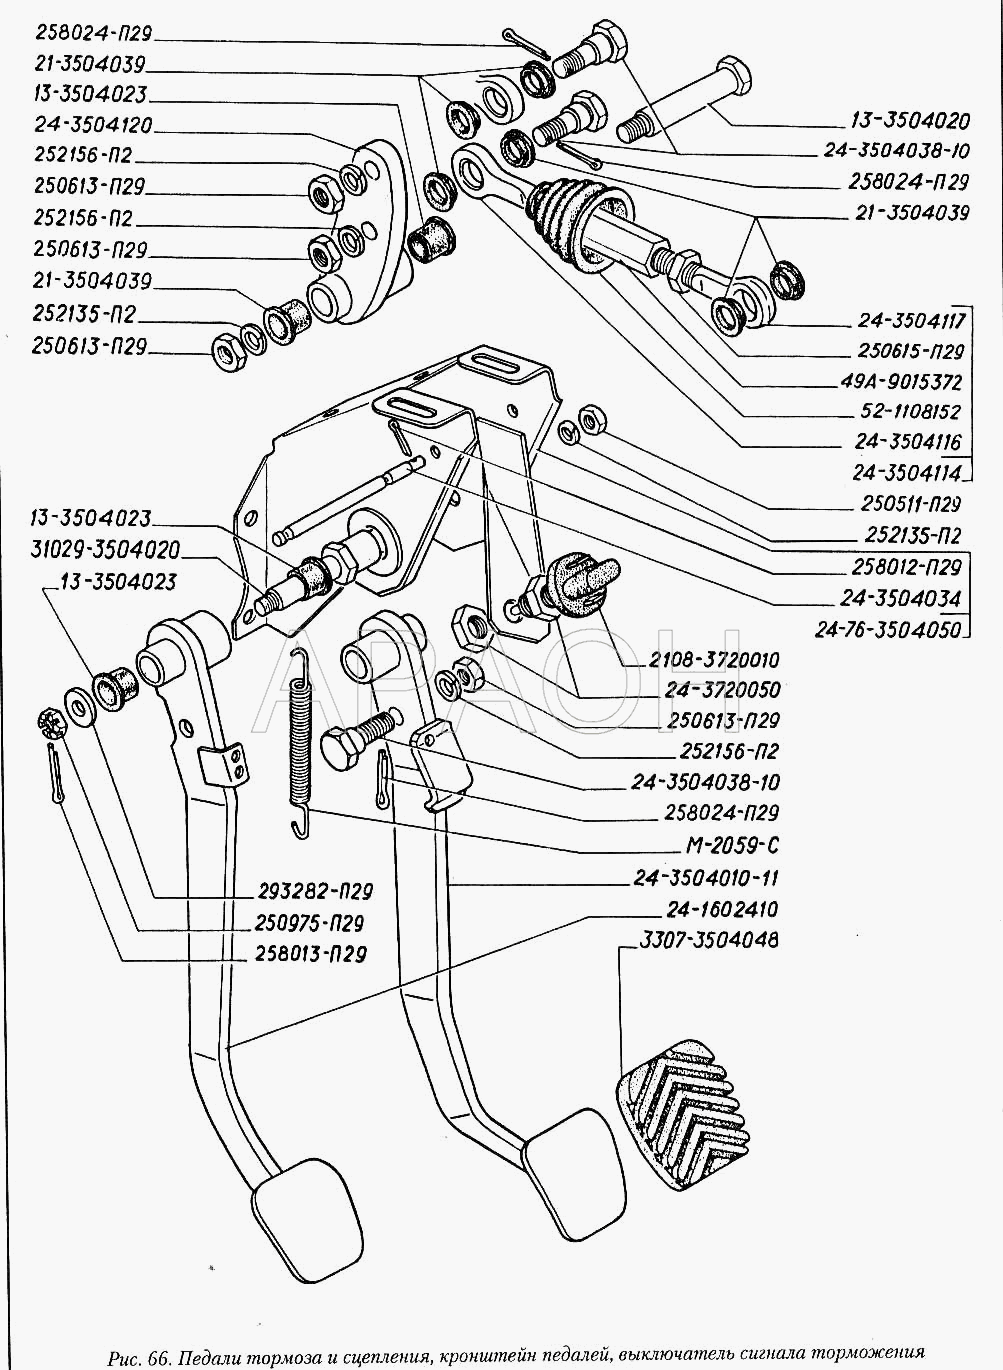 Педали тормоза и сцепления, кронштейн педалей, выключатель сигнала торможения ГАЗ-3110